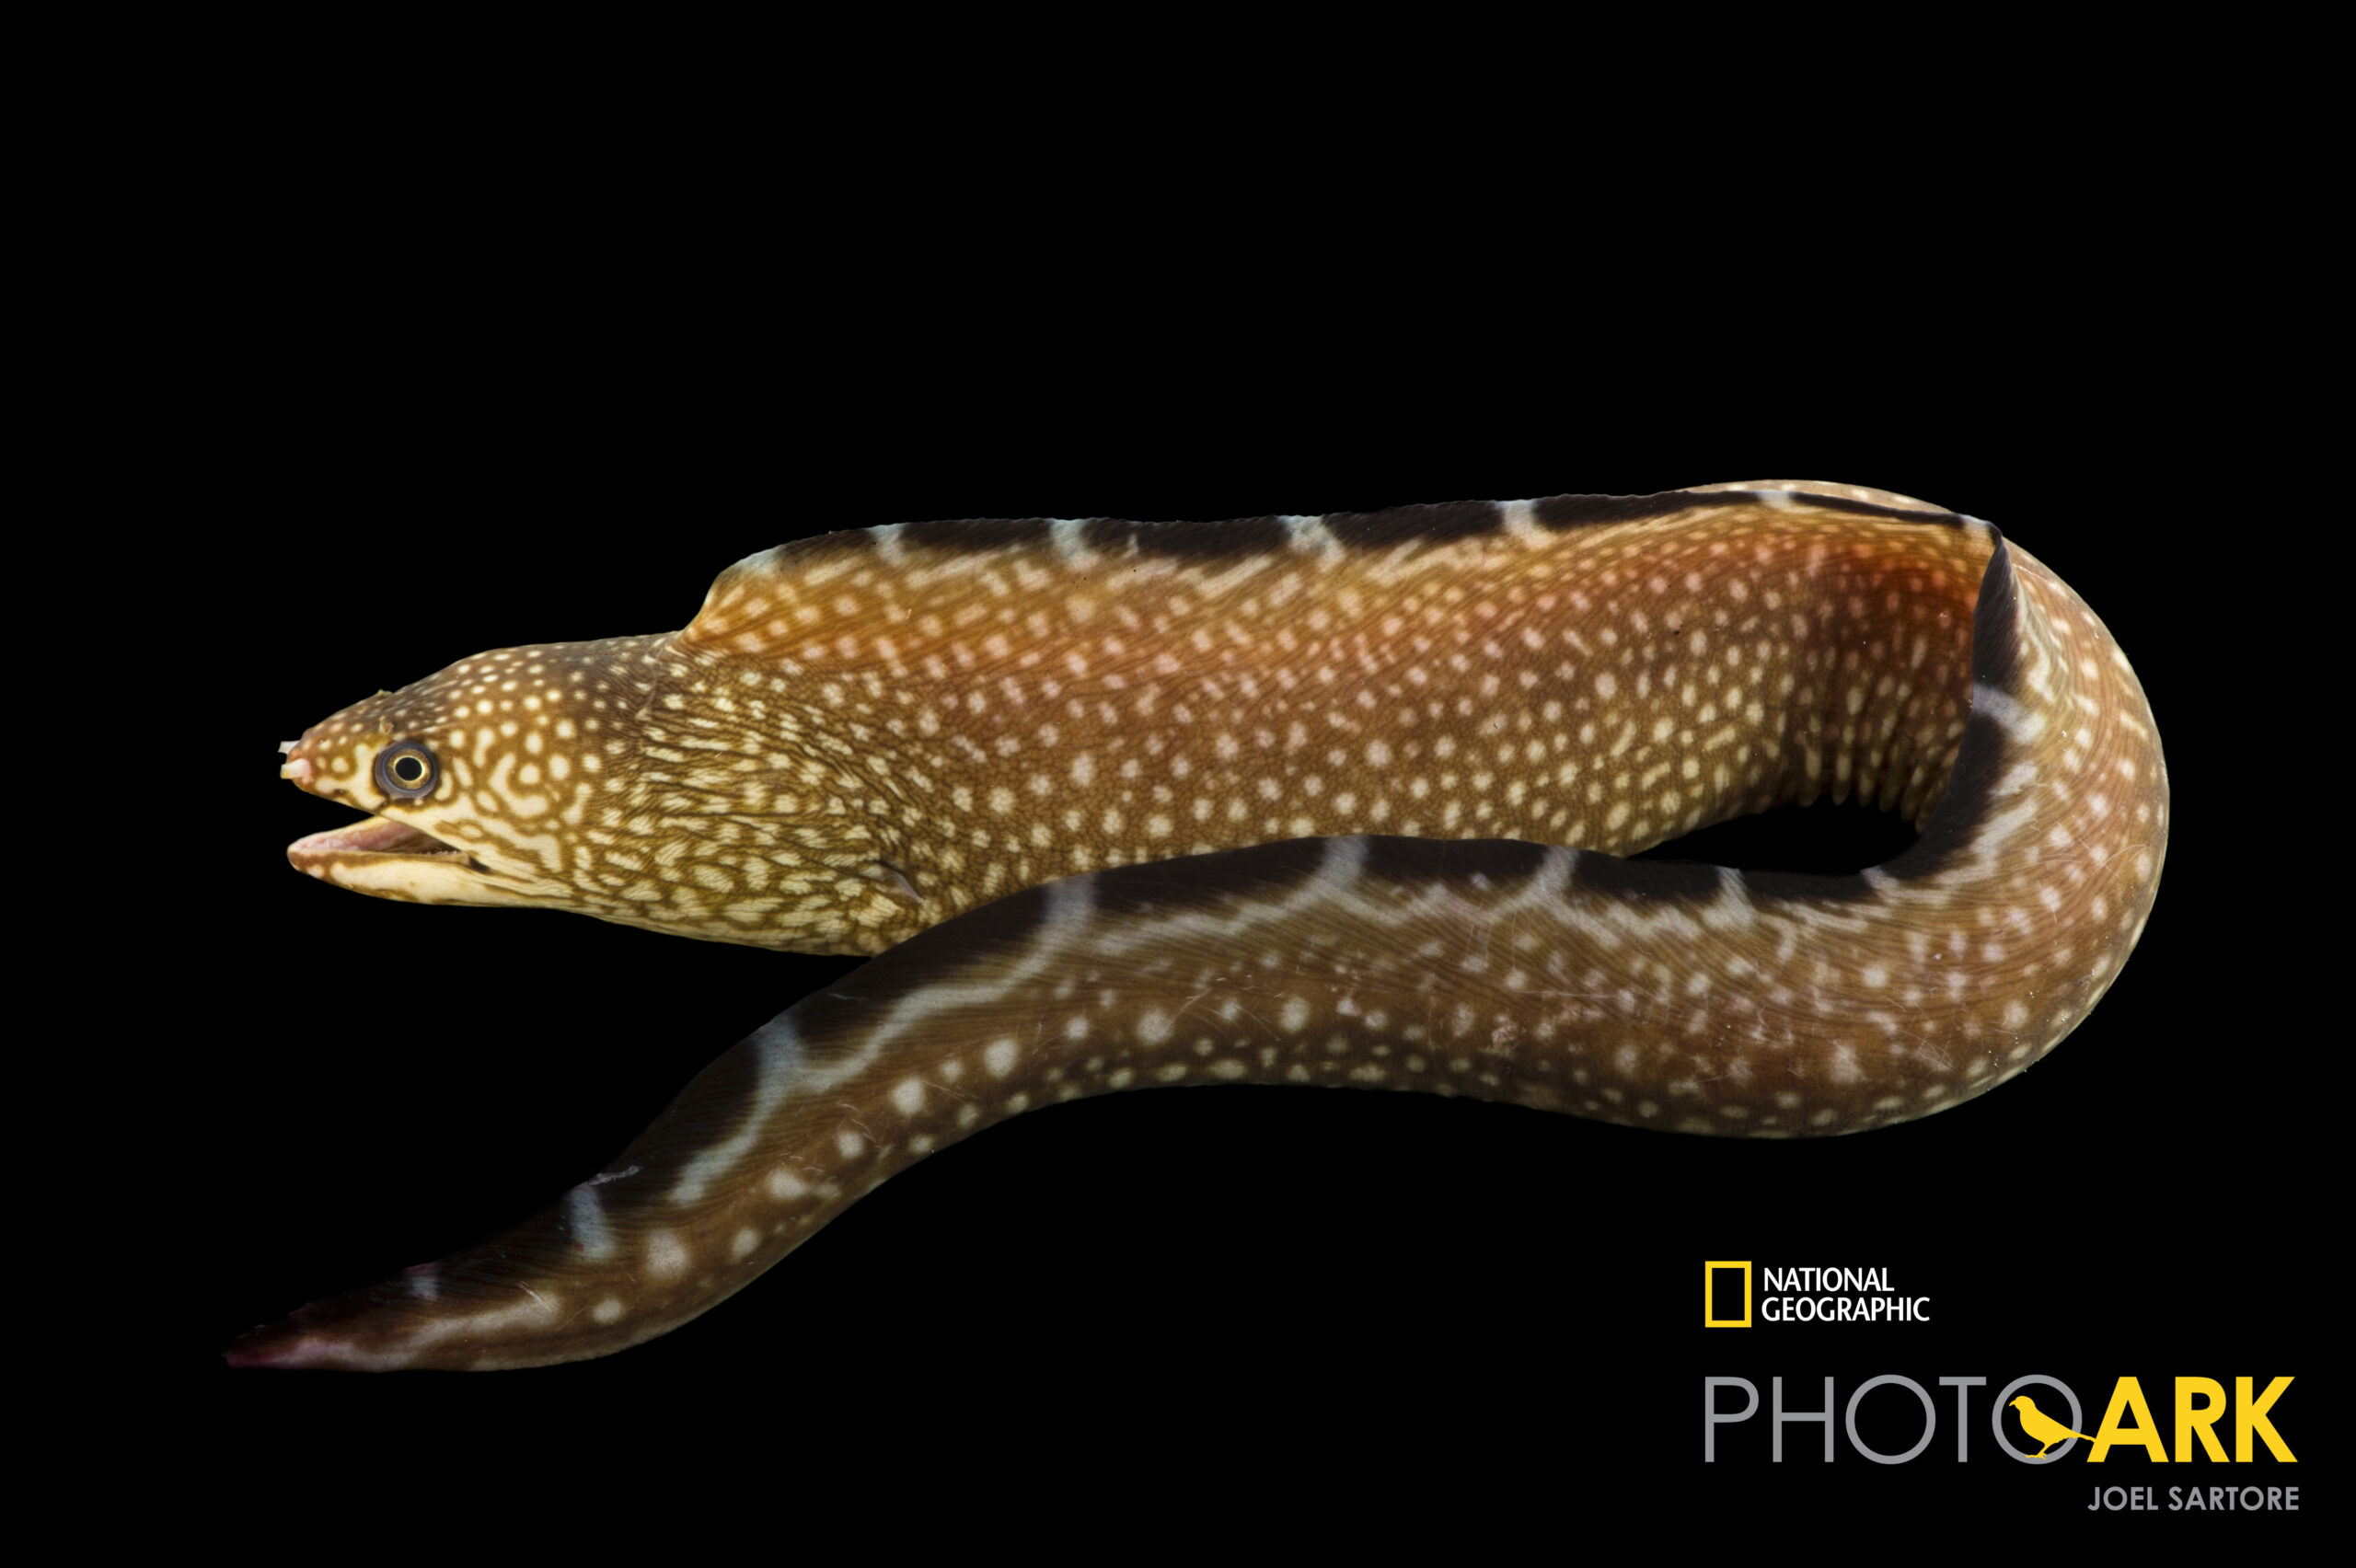 Black edge moray eel (Gymnothorax saxicola) at Gulf Specimen in Panacea, FL.